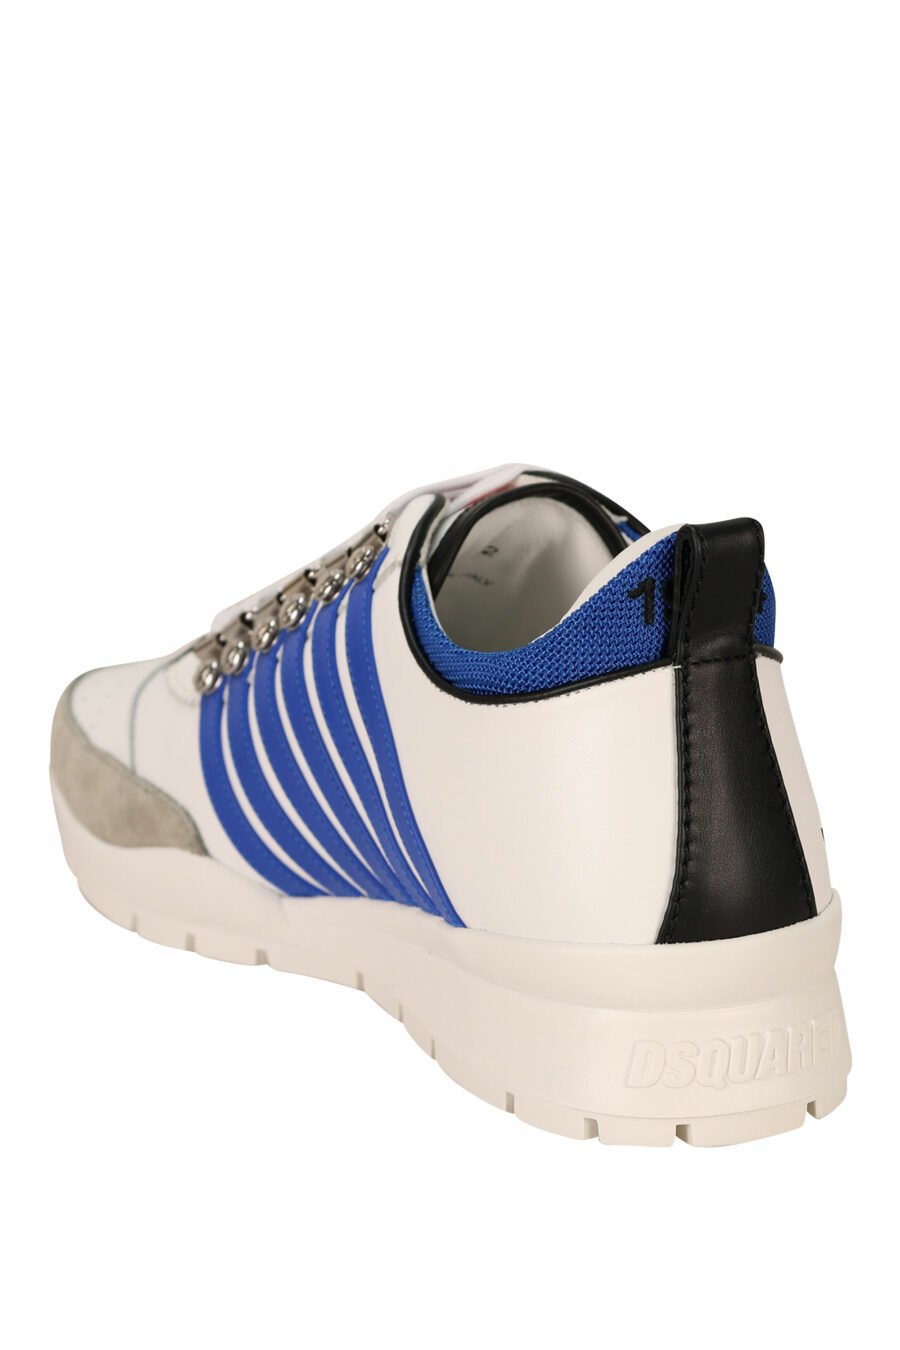 Zapatillas blancas con lineas azules y suela blanca - 8055777301036 3